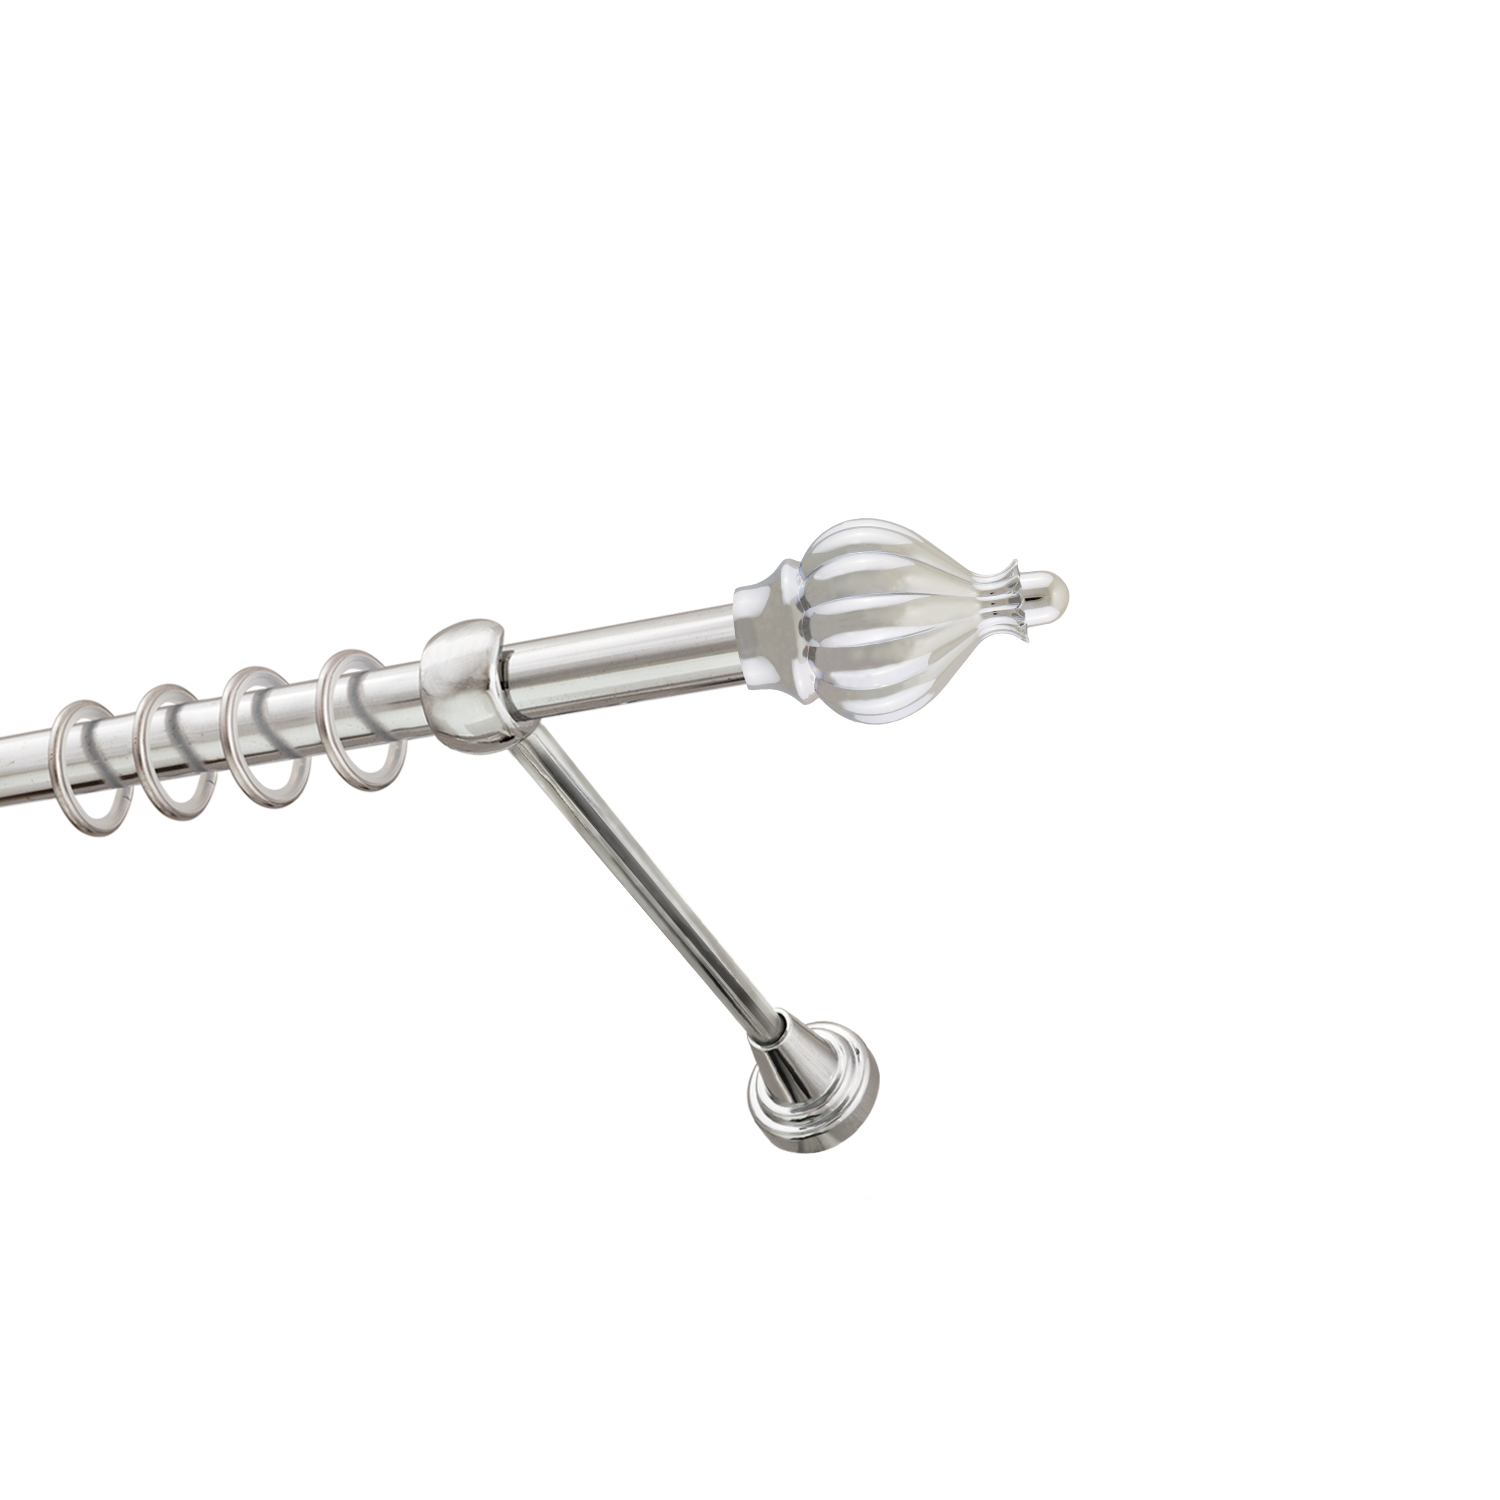 Металлический карниз для штор Афродита, однорядный 16 мм, серебро, гладкая штанга, длина 160 см